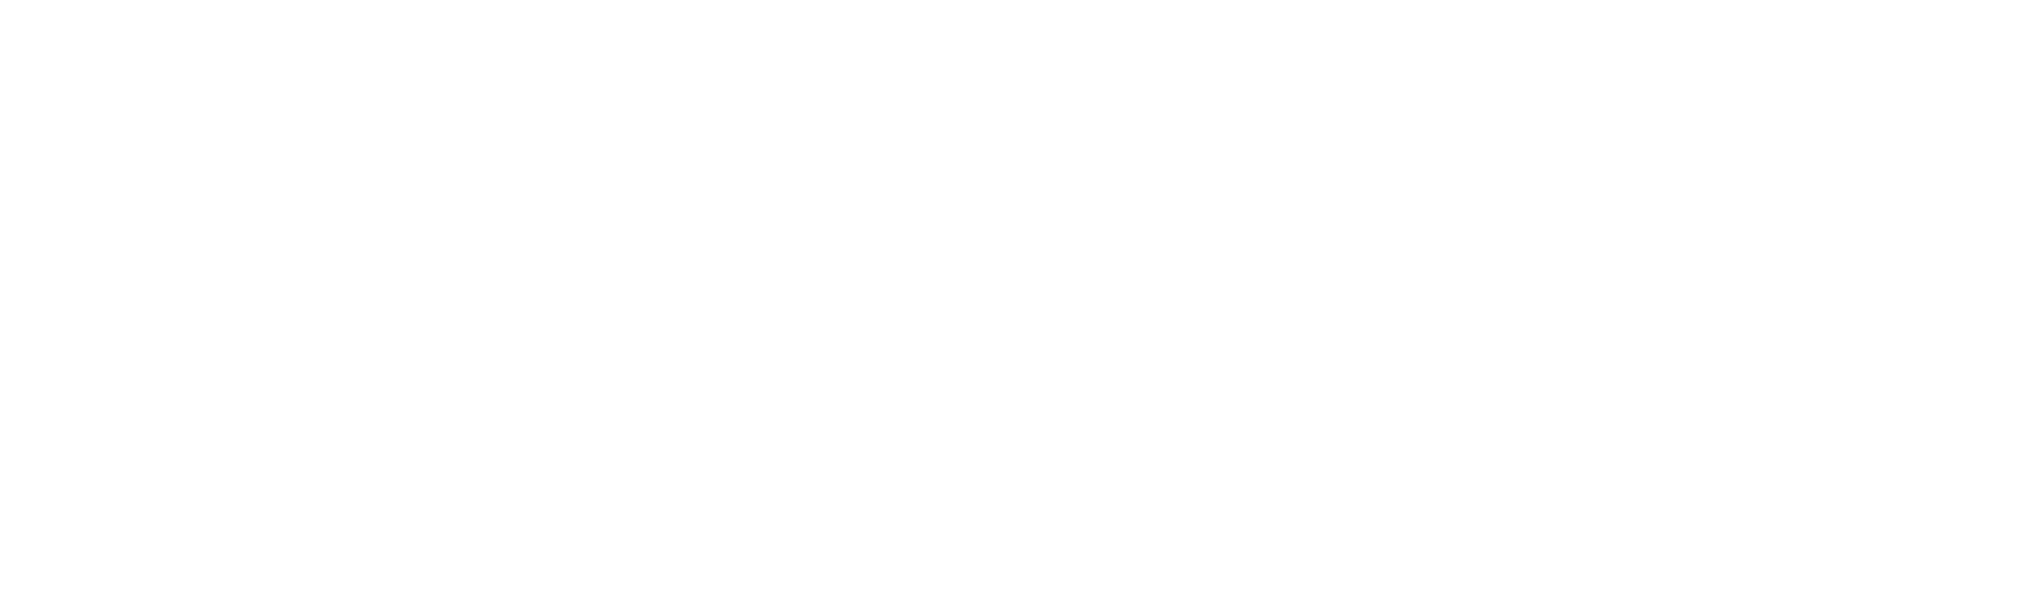 Certyfikacja systemów ISO, BRC, IFS, FSSC - Isoqar